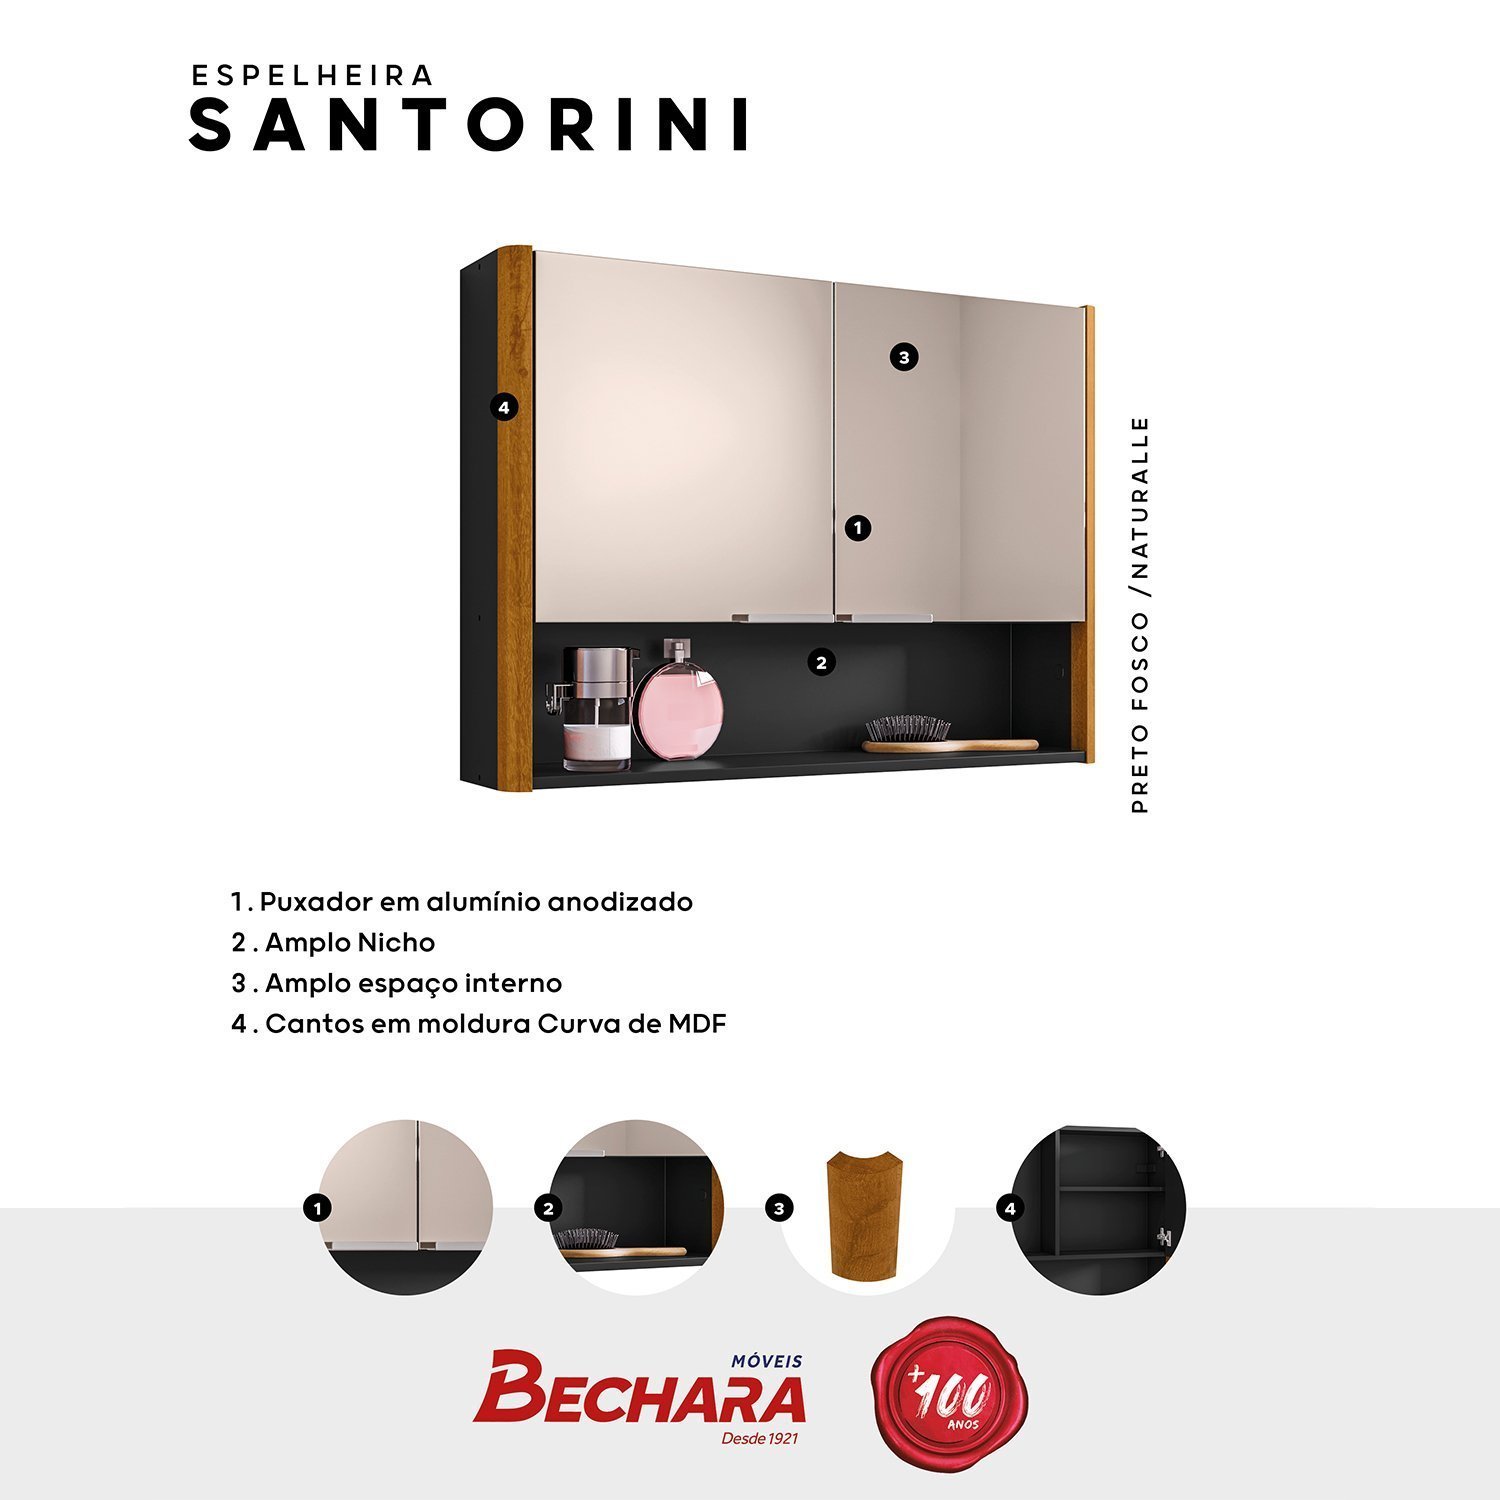 Espelheira para Banheiro Santorini Cantos Curvos 72cm - 5